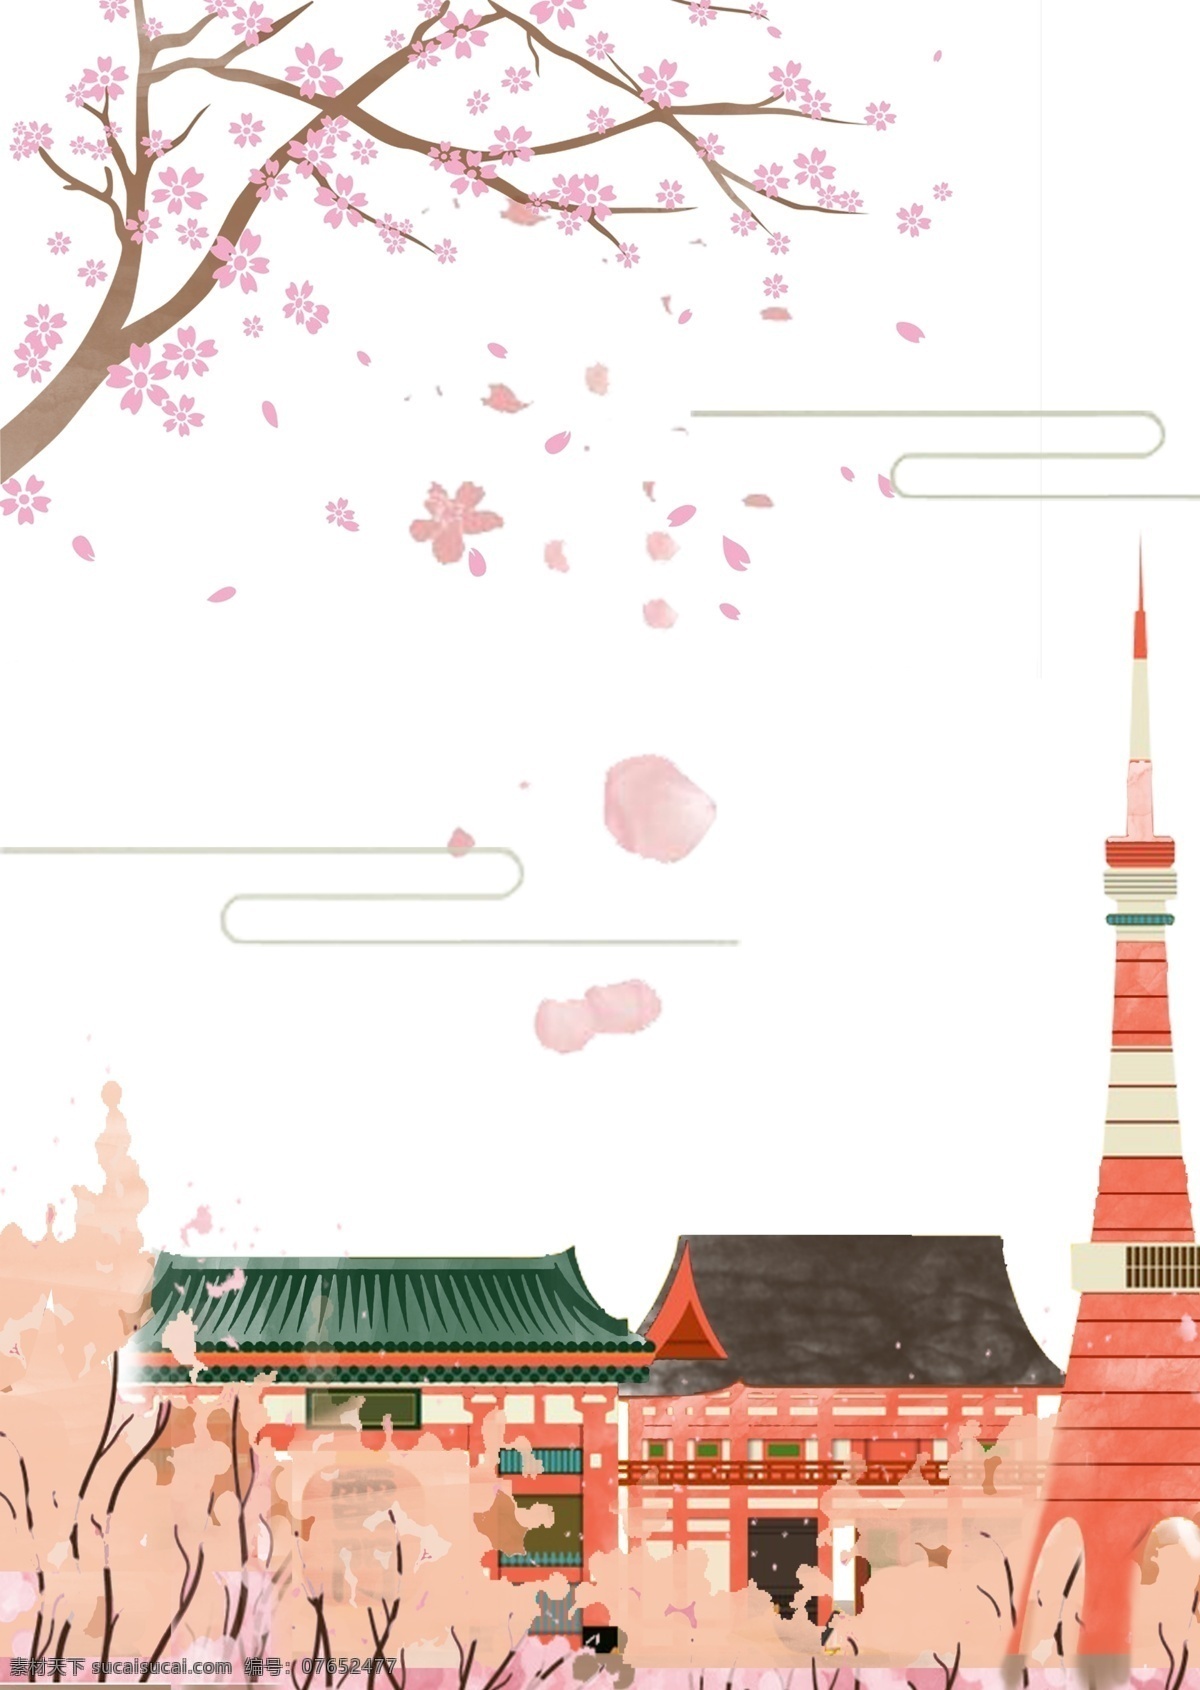 日式和风背景 中国风 樱花 樱花季 樱花节 唯美 浪漫 花朵 枝叶 树枝 治愈 清新 粉色 日式 和风 手绘 淘宝 天猫 旅游 日本游